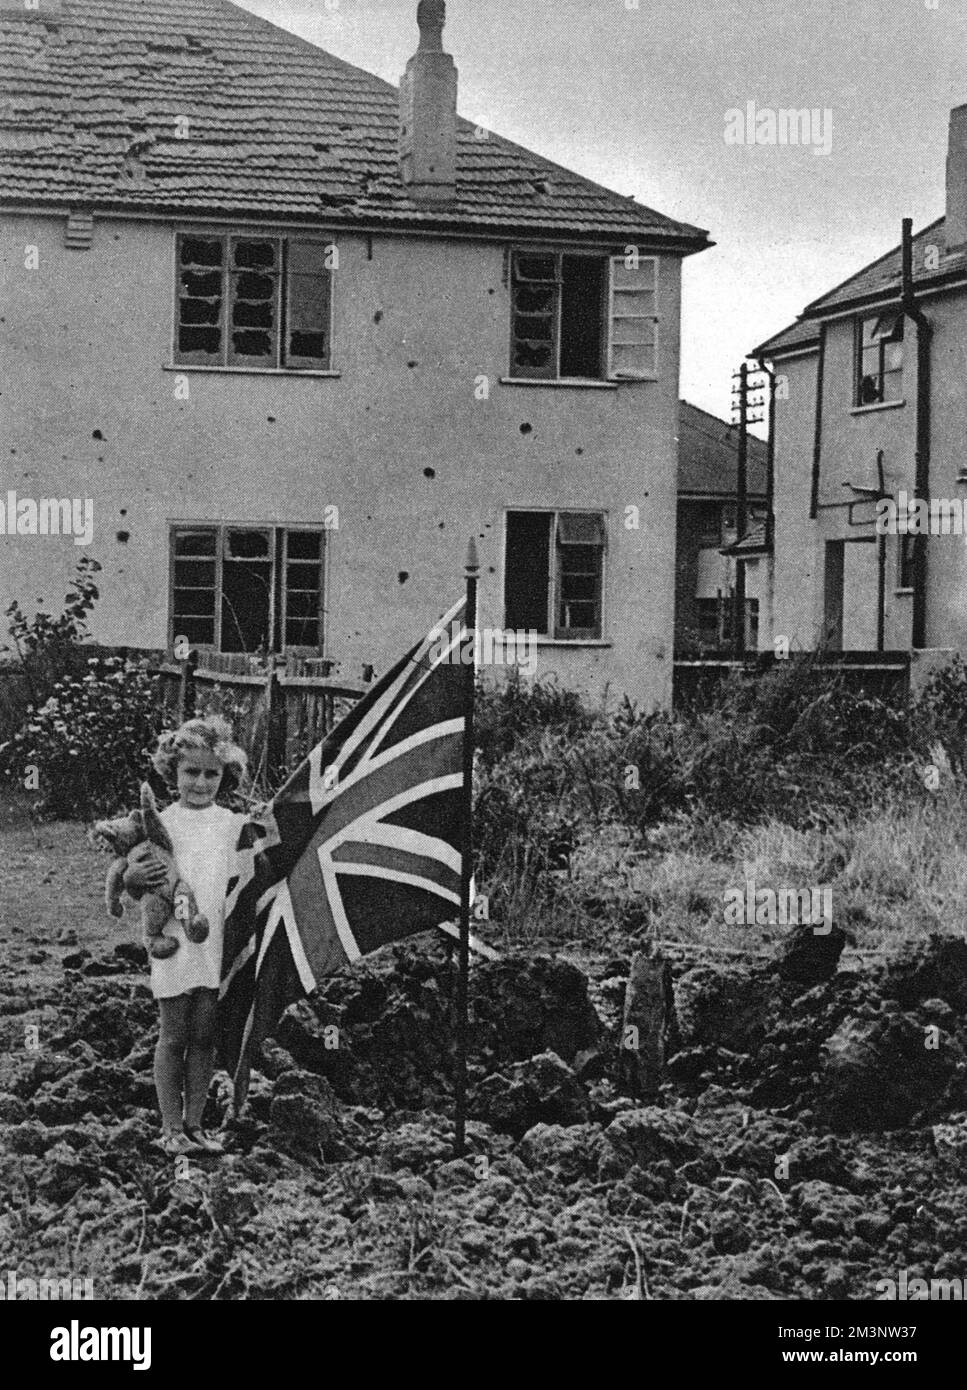 Provocante contre les raids aériens allemands, une petite fille se tient dans son jardin à Eastbourne, ours en peluche d'une part, Union jack de l'autre, posant par un cratère à la bombe. Derrière elle se trouve une maison aux fenêtres écrasées et aux clattes manquantes: Témoignage de la violence de l'explosion. Date: 1940 Banque D'Images